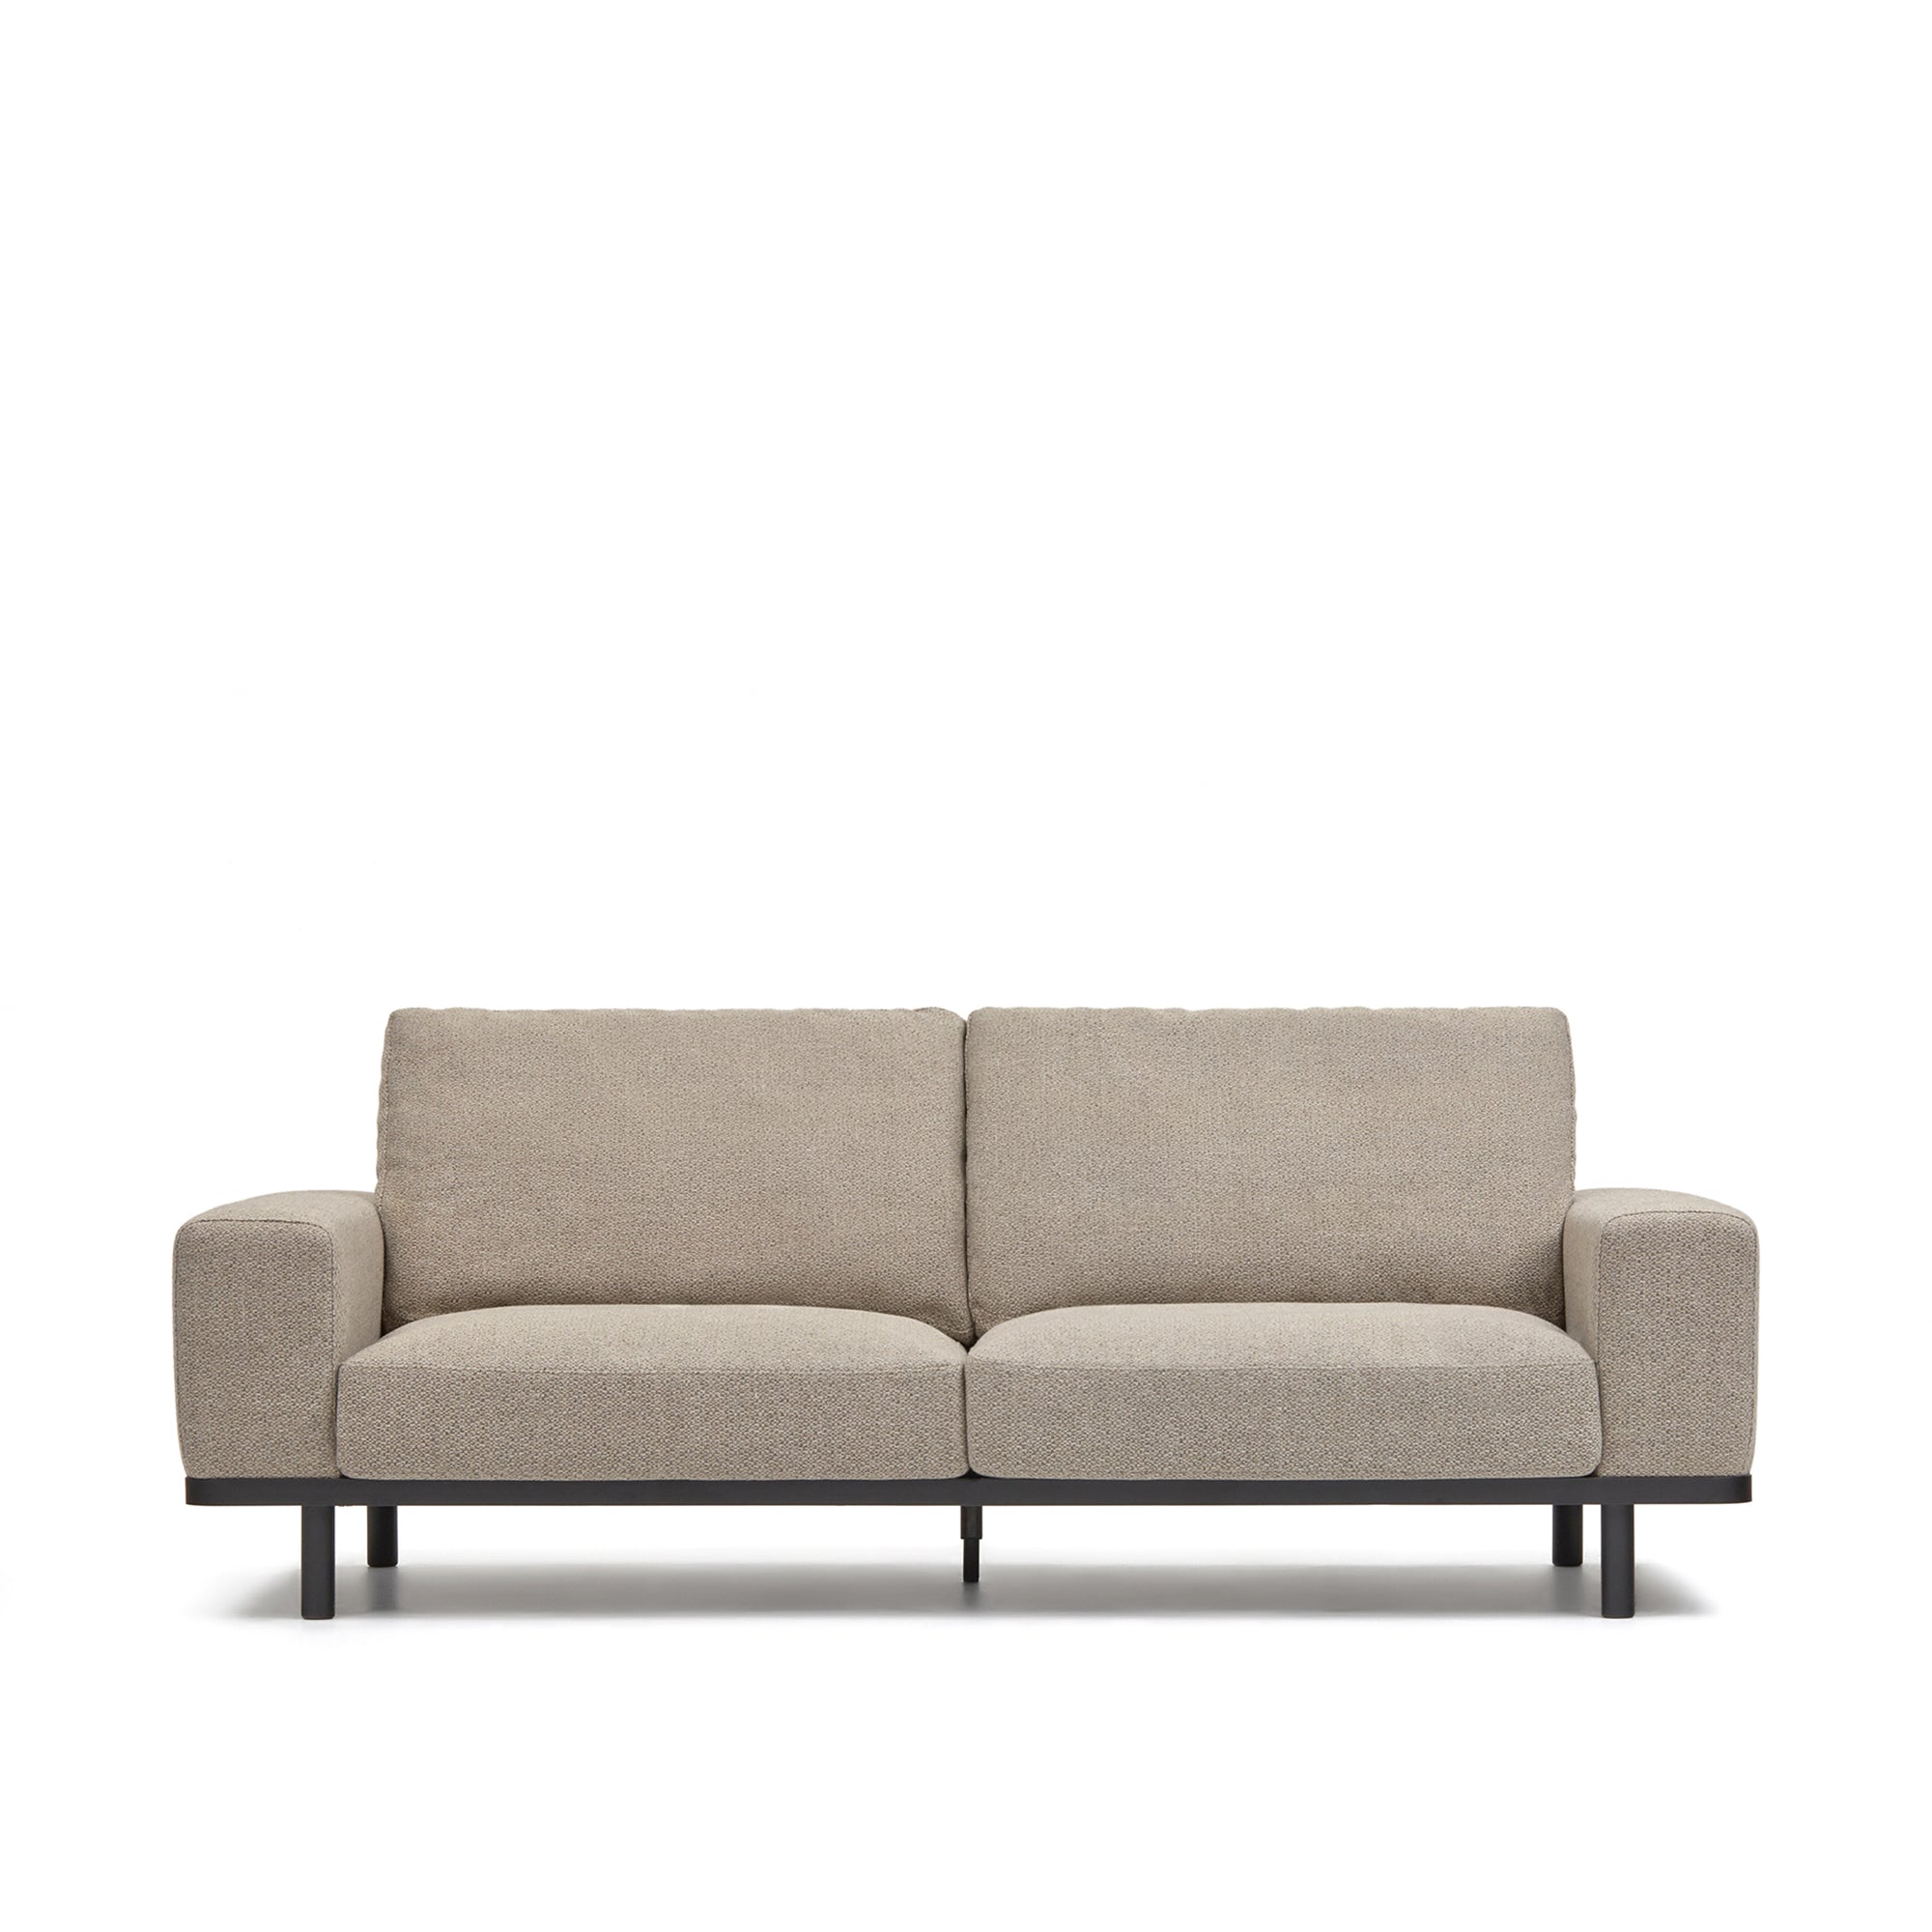 Noa 3 személyes kanapé bézs színben, sötét színű lábakkal, 230 cm